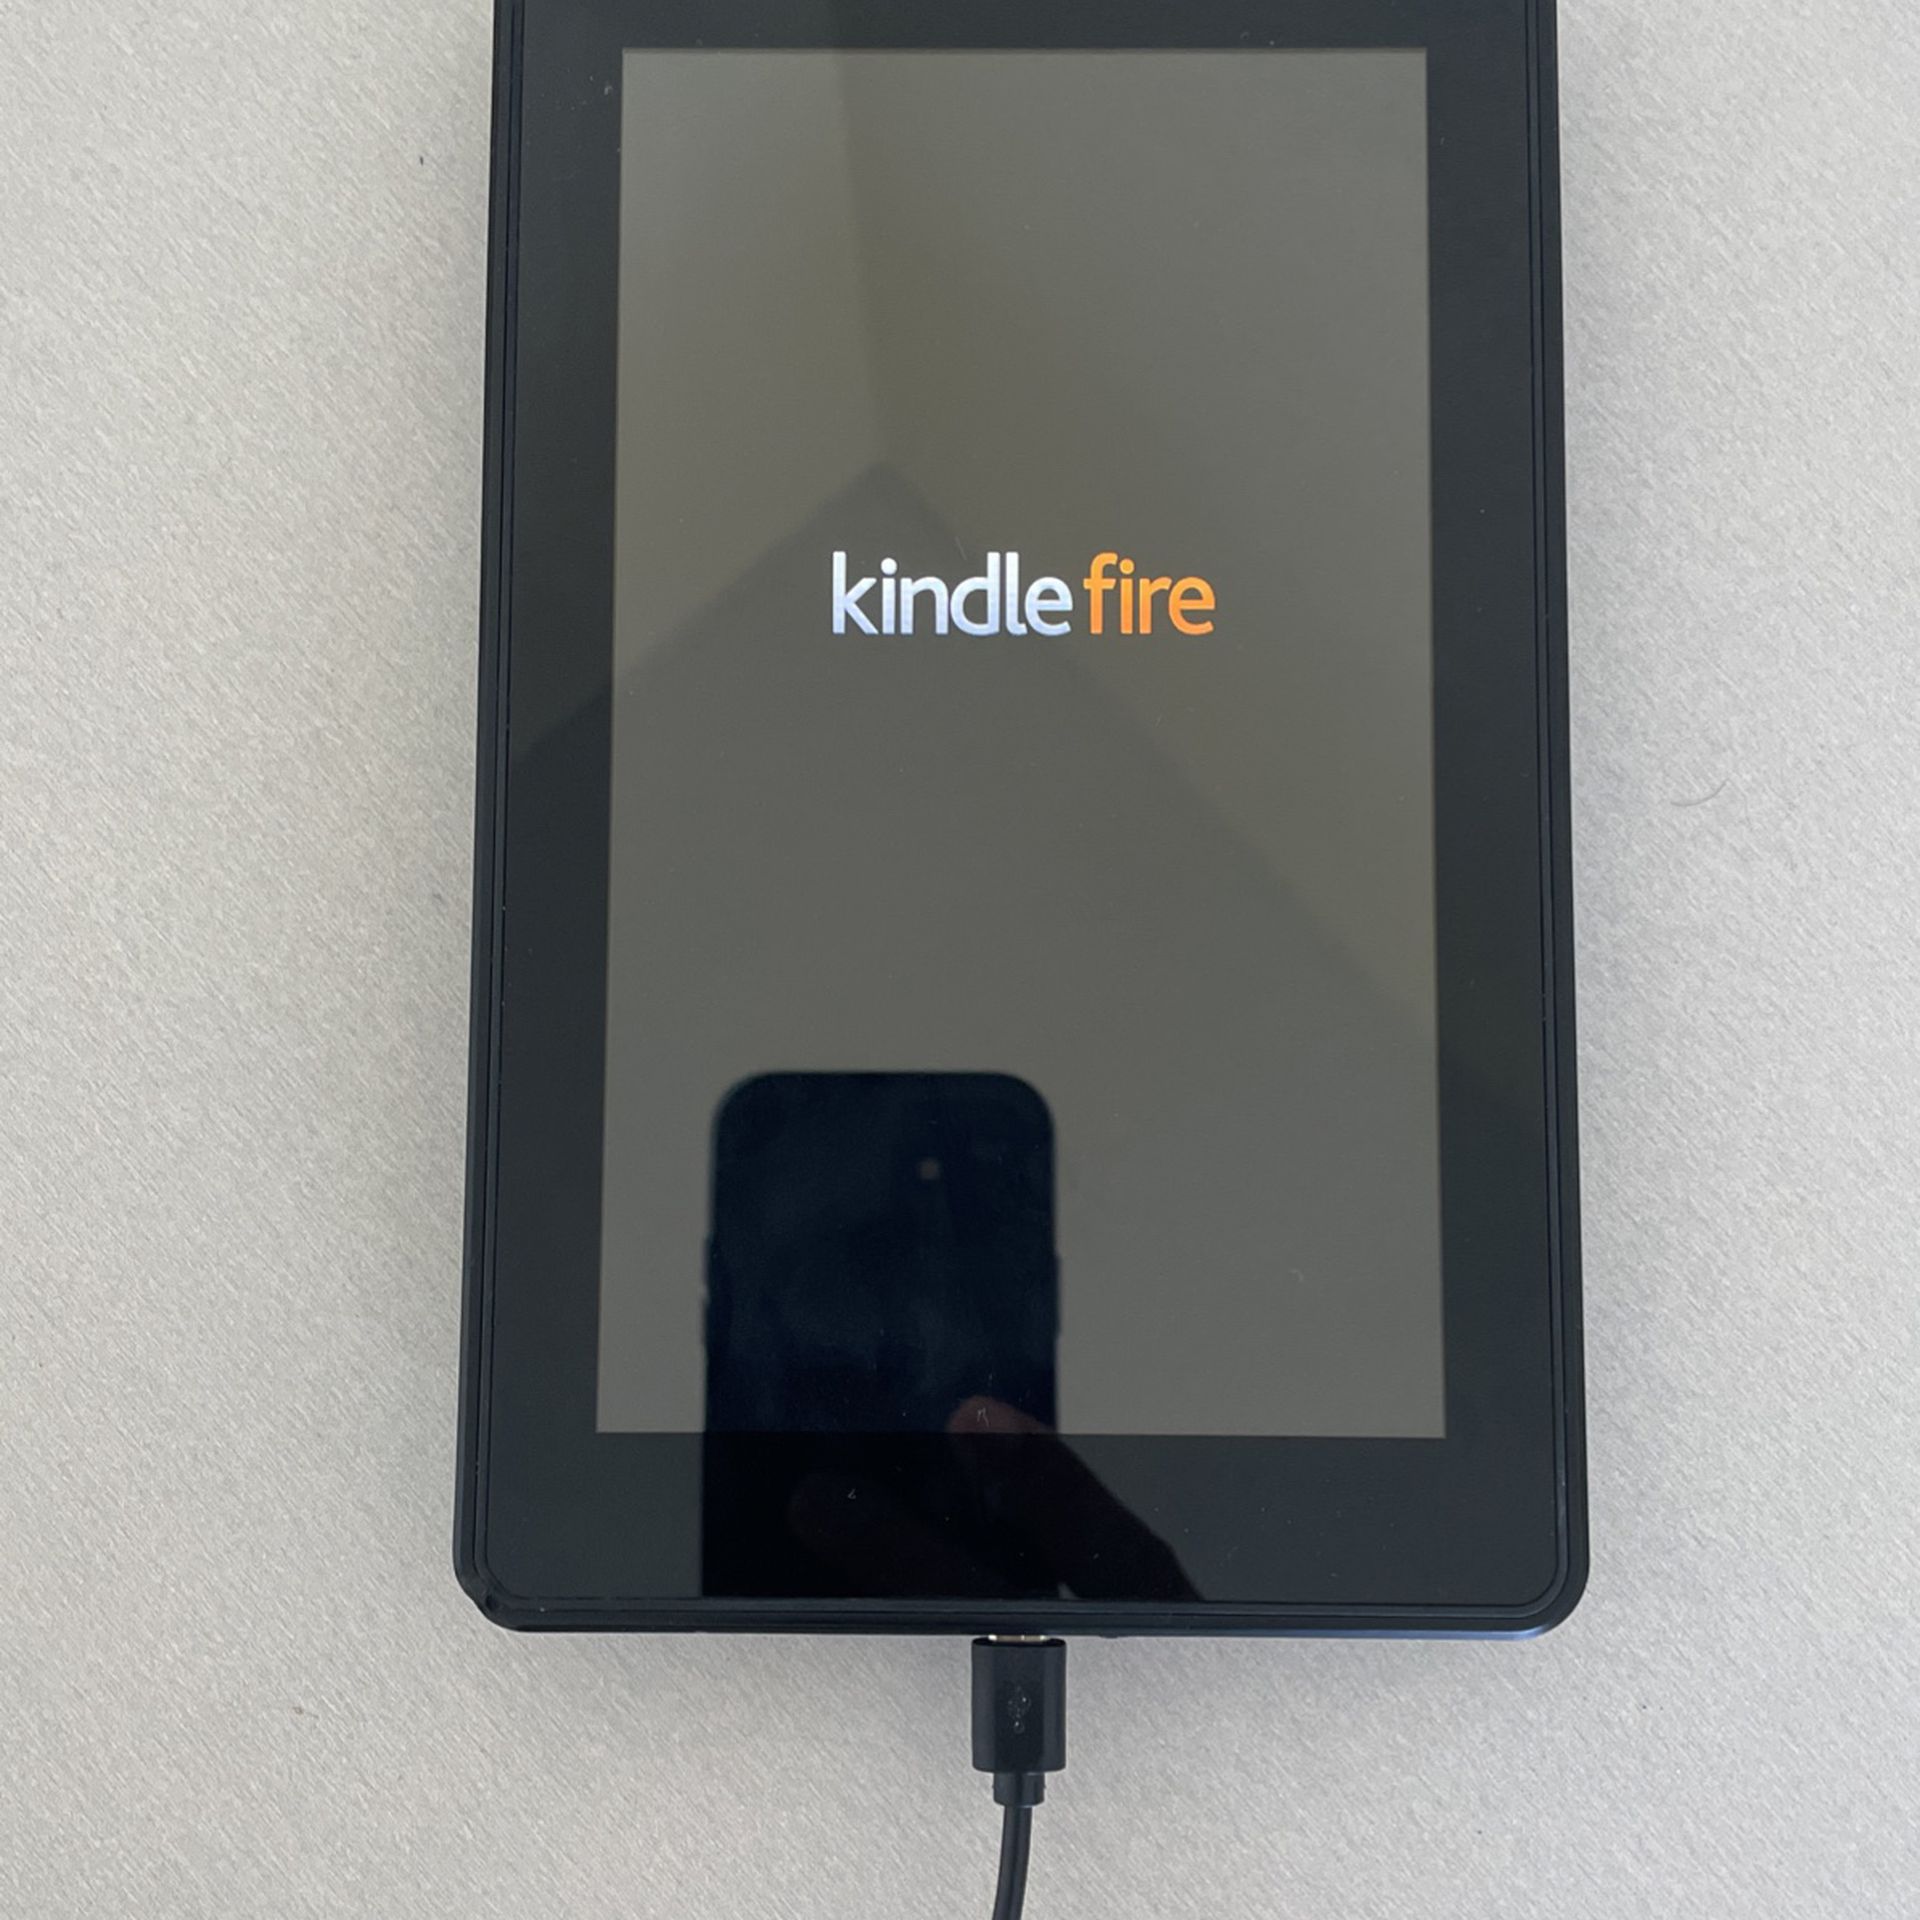 Kindle Fire Amazon